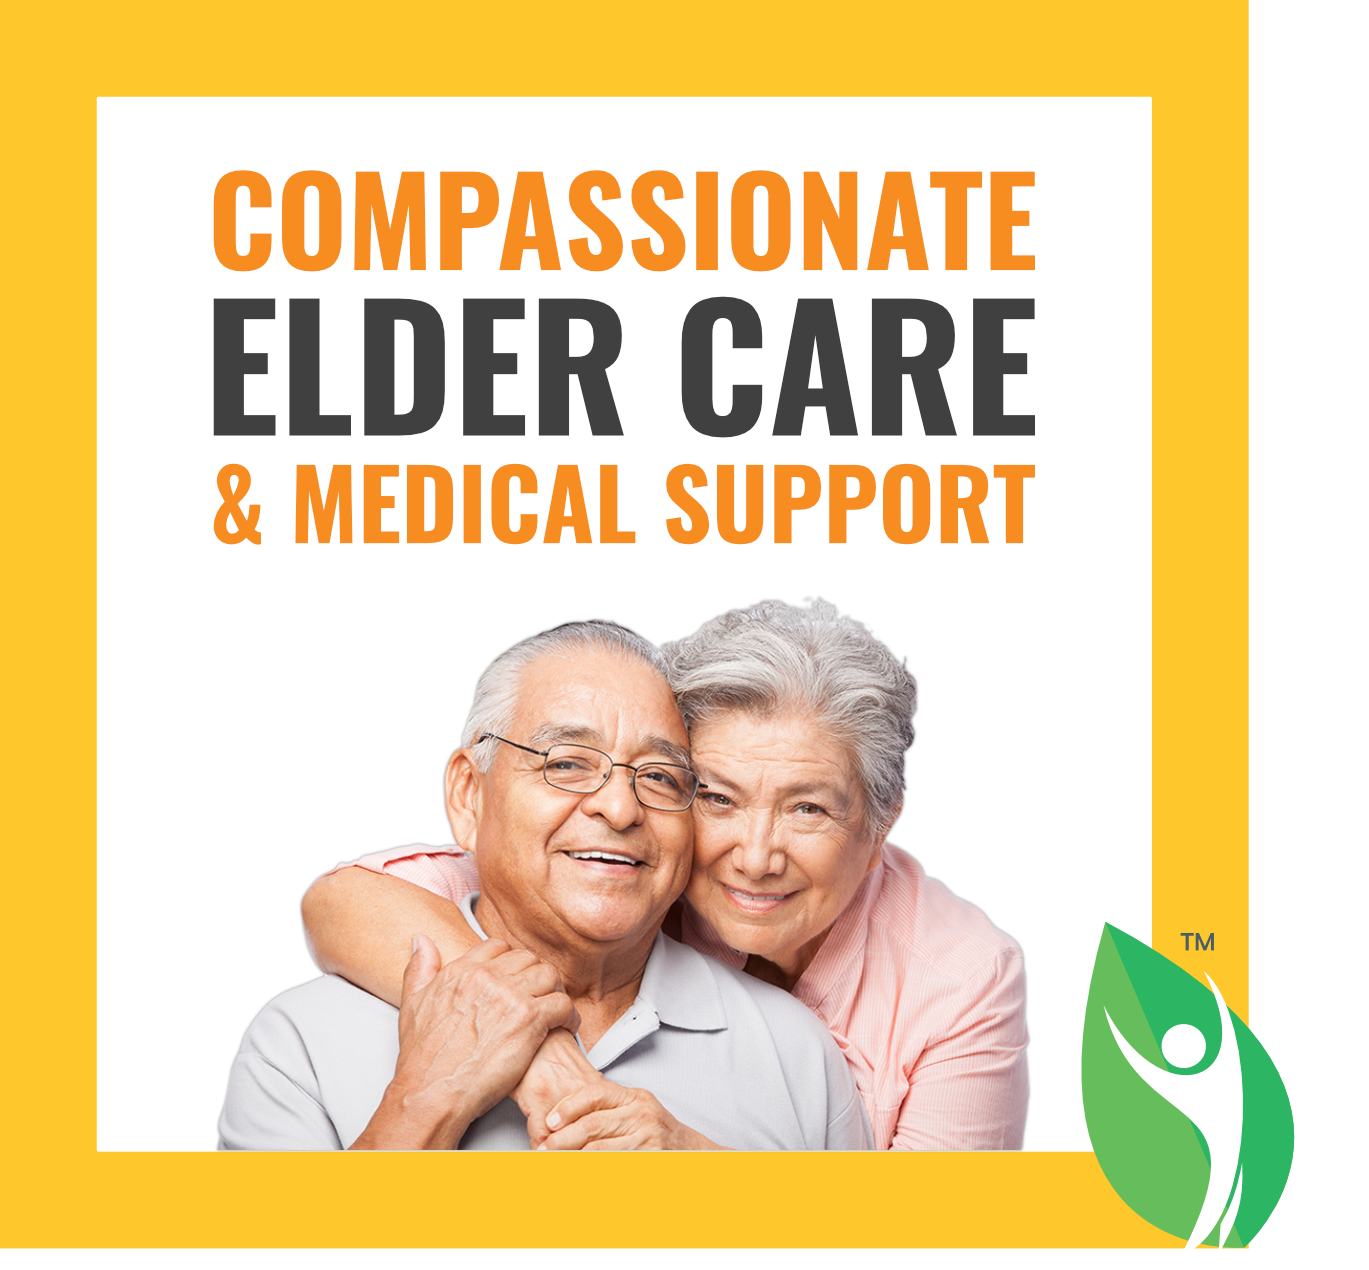 Elder Care Home Services in Pune & Mumbai, India